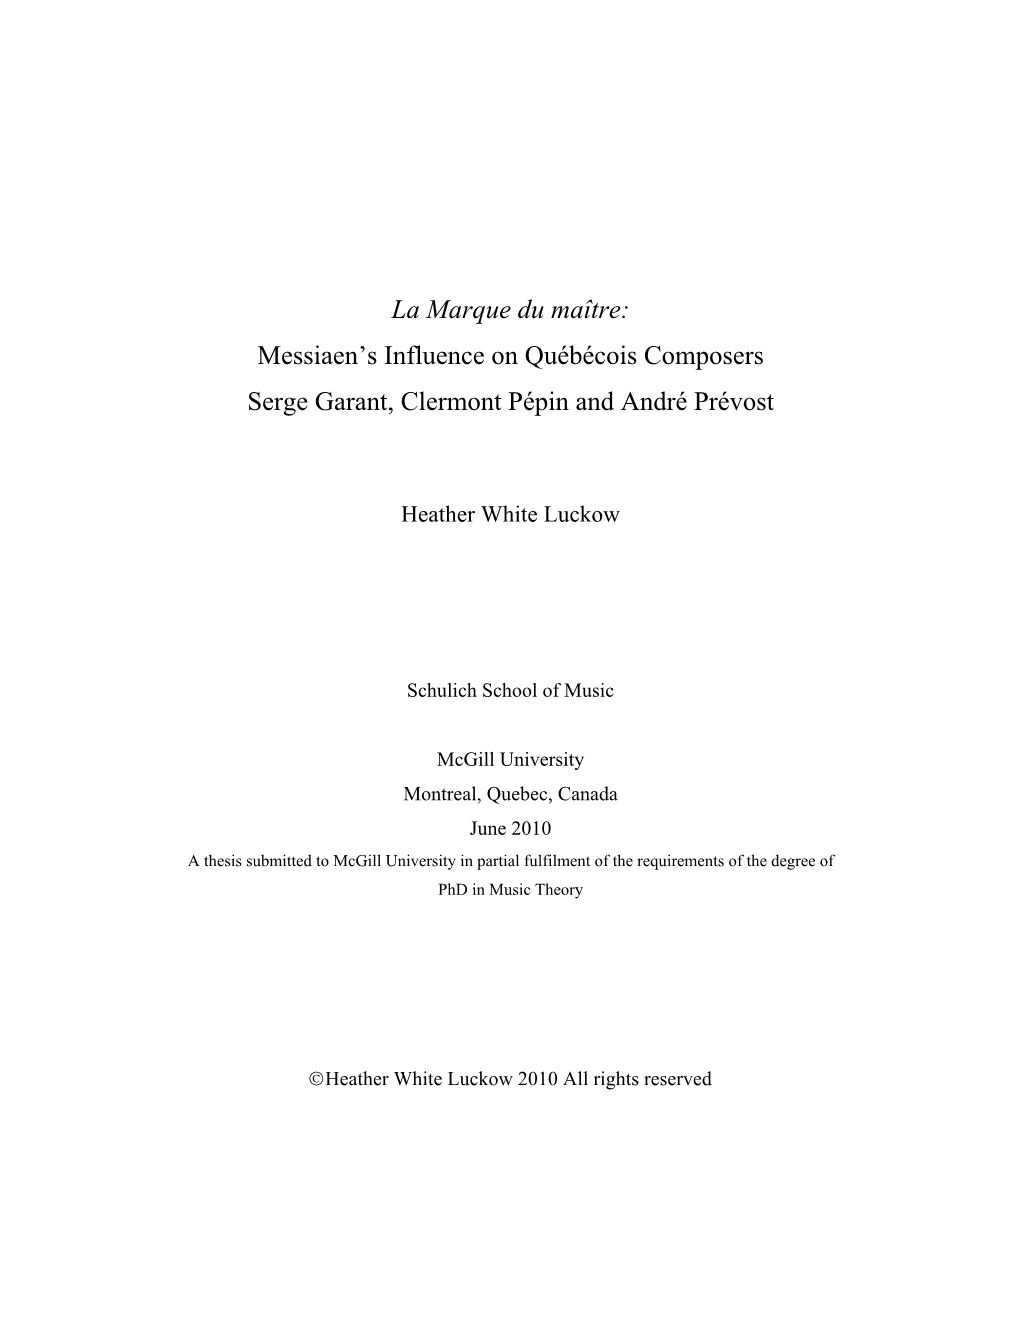 La Marque Du Maître: Messiaen's Influence on Québécois Composers